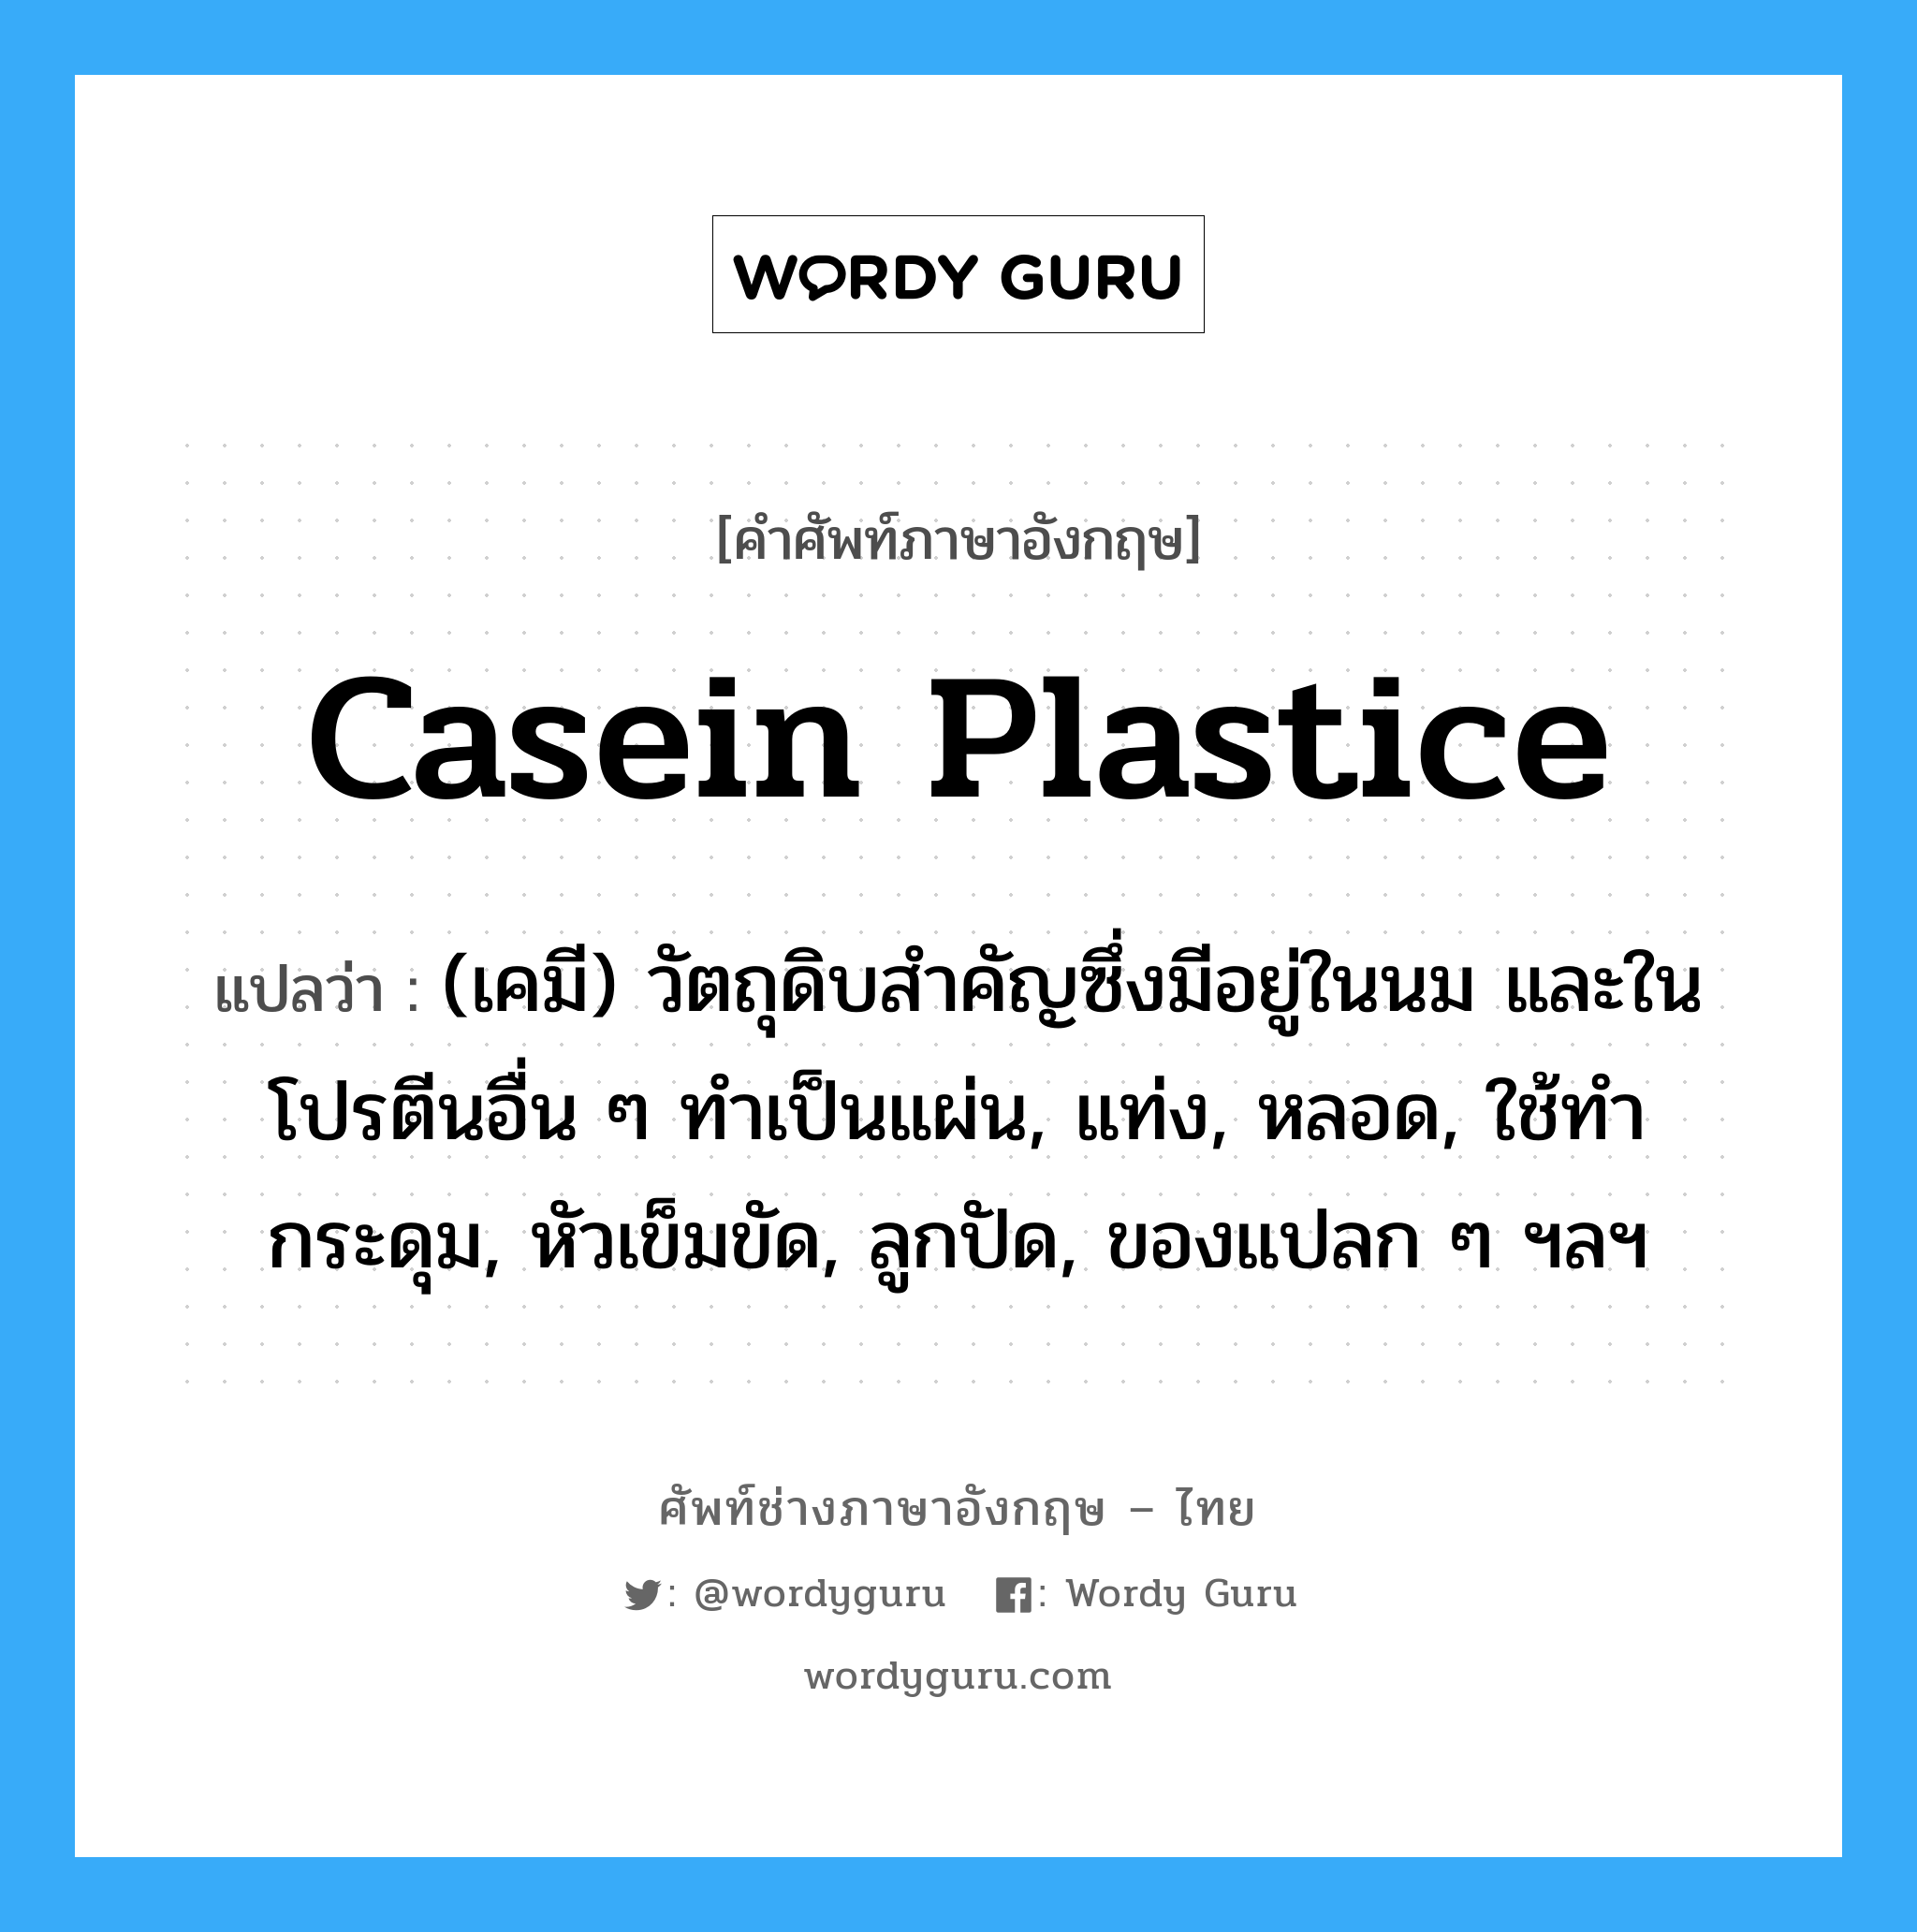 casein plastice แปลว่า?, คำศัพท์ช่างภาษาอังกฤษ - ไทย casein plastice คำศัพท์ภาษาอังกฤษ casein plastice แปลว่า (เคมี) วัตถุดิบสำคัญซึ่งมีอยู่ในนม และในโปรตีนอื่น ๆ ทำเป็นแผ่น, แท่ง, หลอด, ใช้ทำกระดุม, หัวเข็มขัด, ลูกปัด, ของแปลก ๆ ฯลฯ